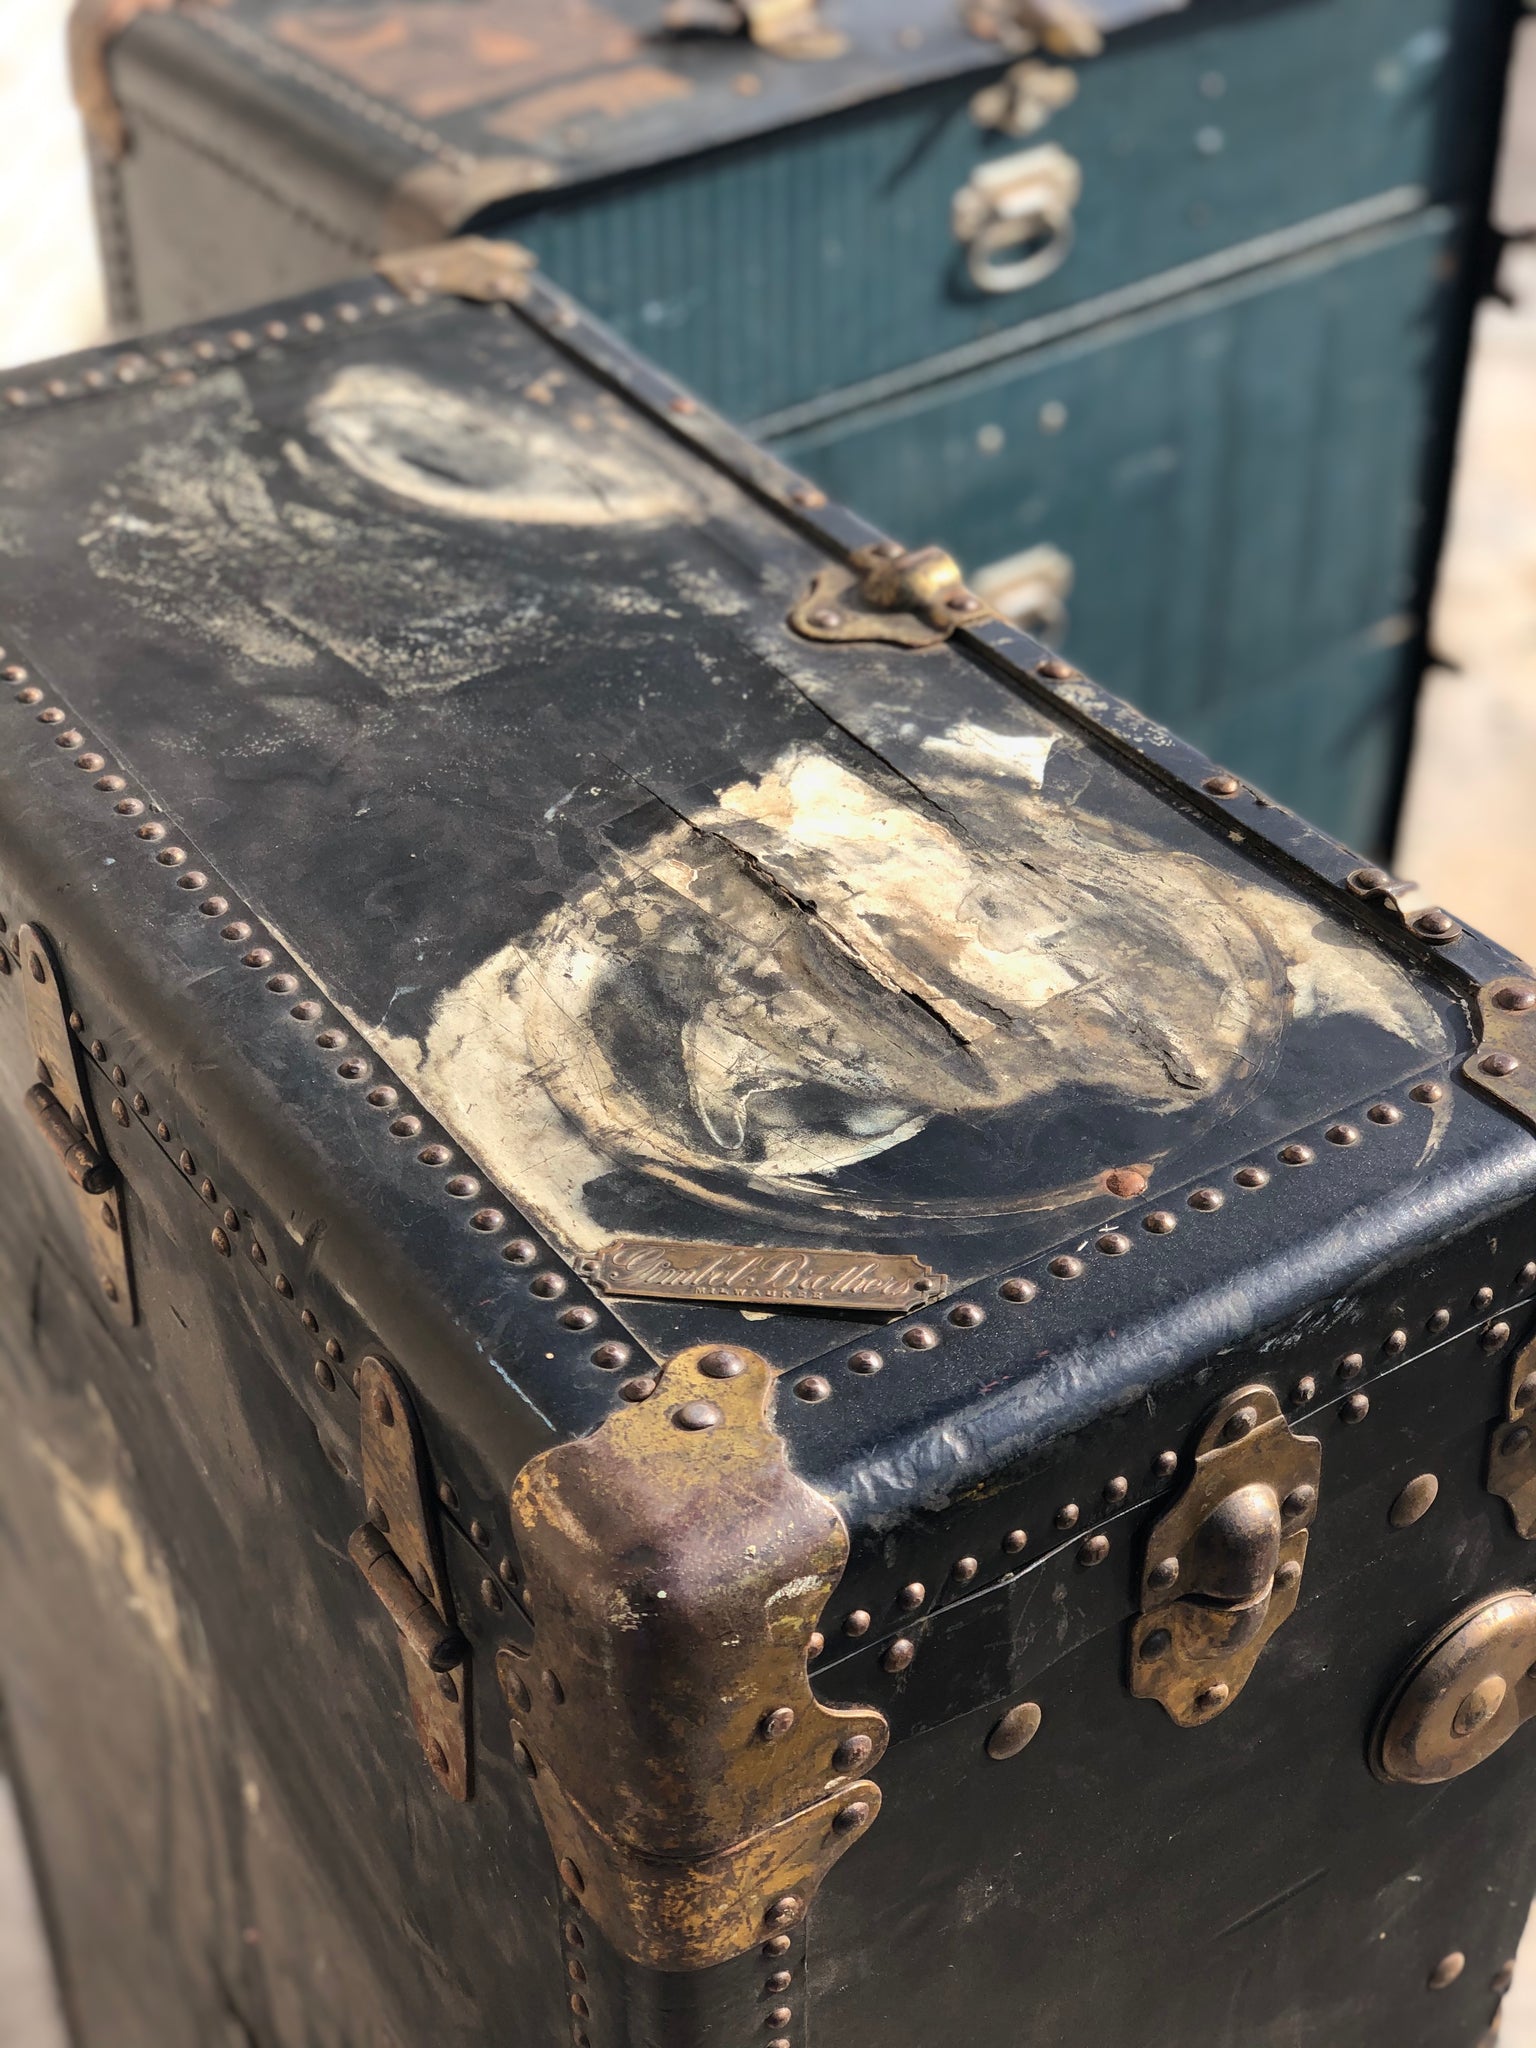 Antique Gimbel Brothers Upright travel steamer trunk